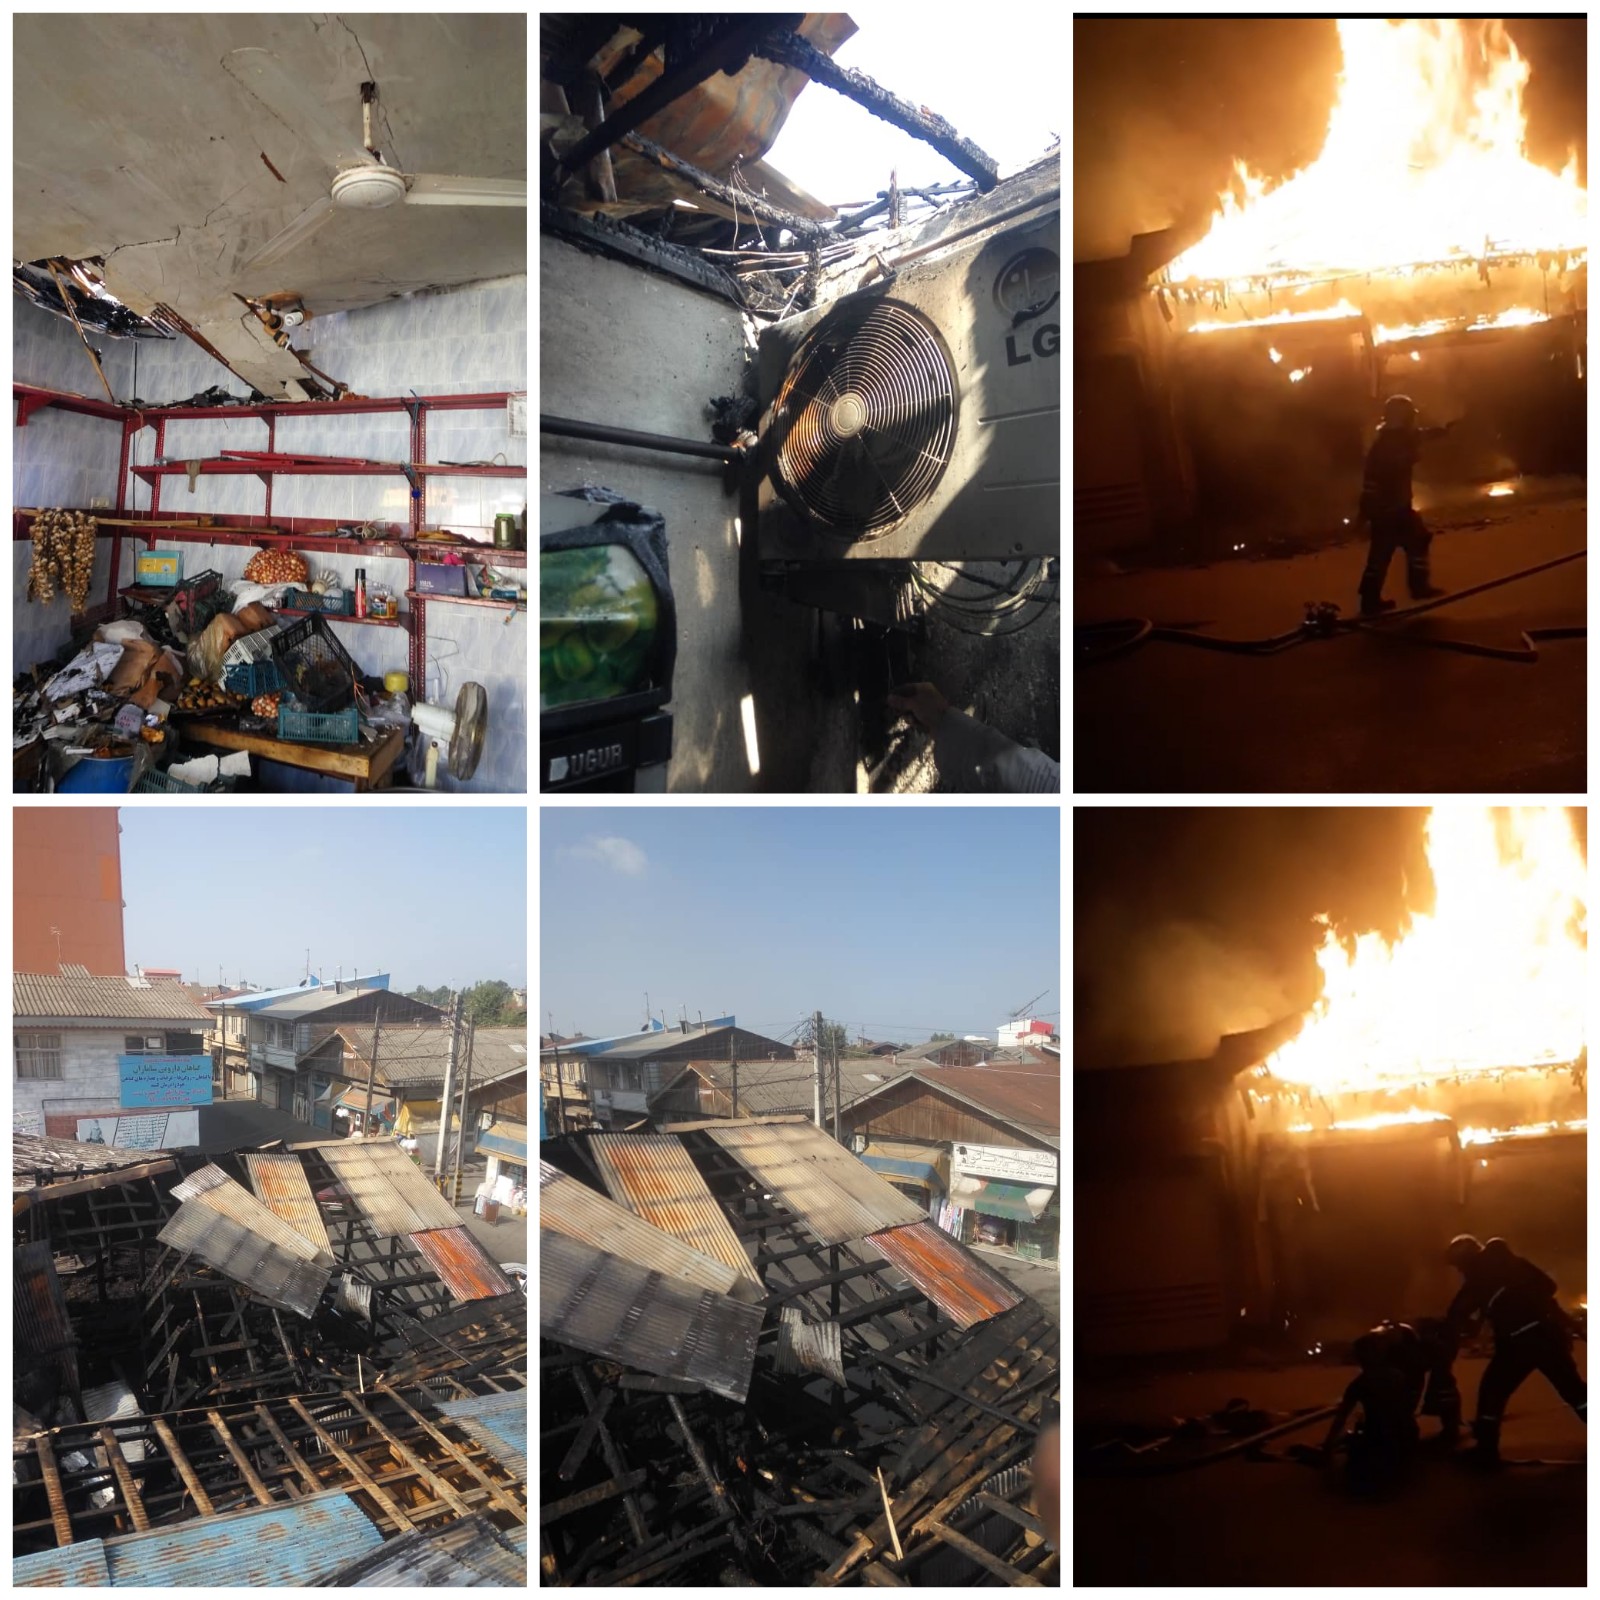 آتش سوزی ۴مغازه در جماران رشت/ رئیس سازمان آتش نشانی: مردم از جابجایی تجهیزات آتش نشانی خودداری کنند